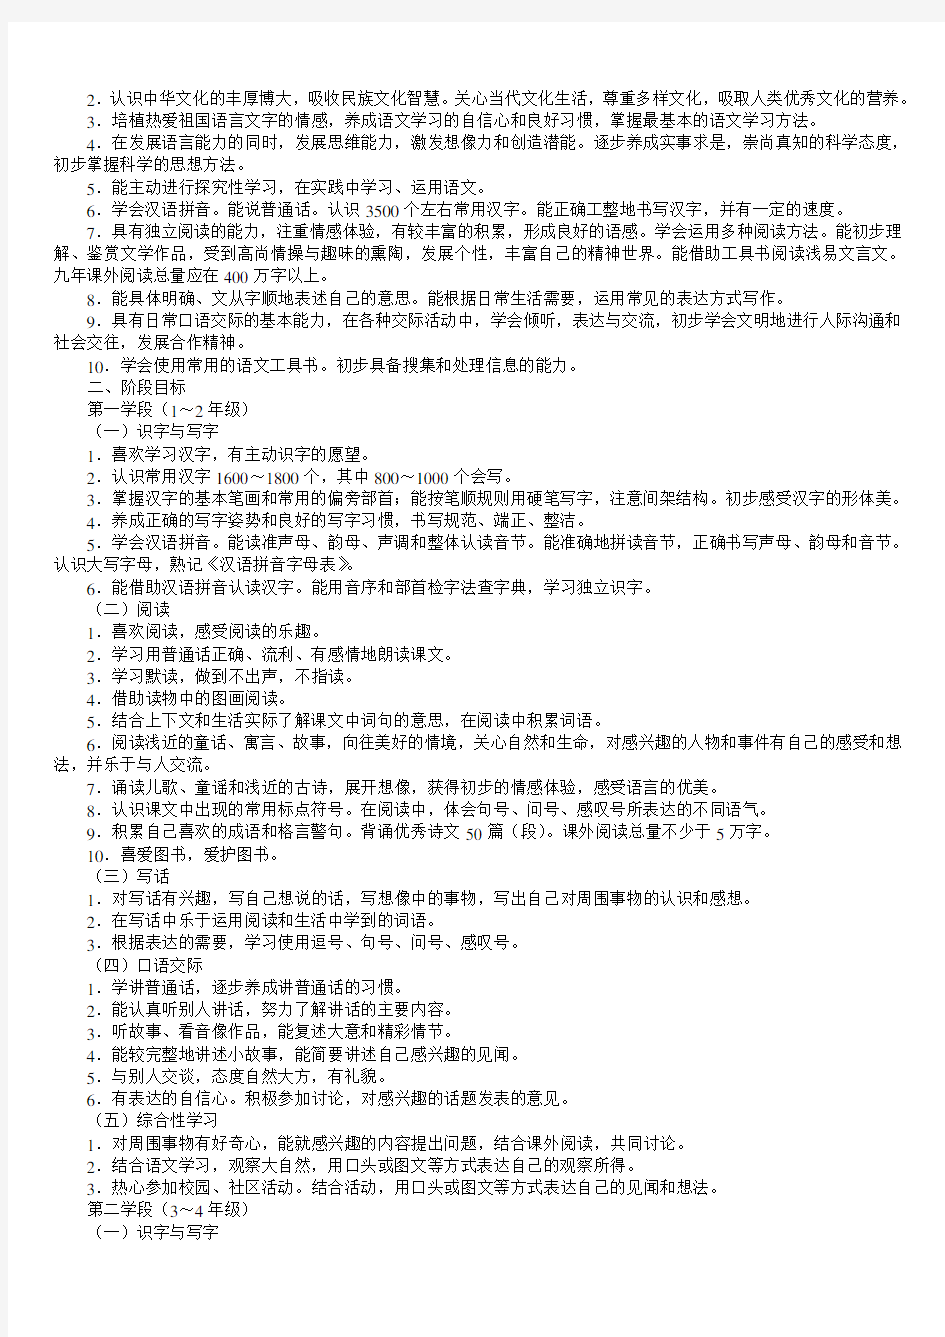 初中语文课程标准内容